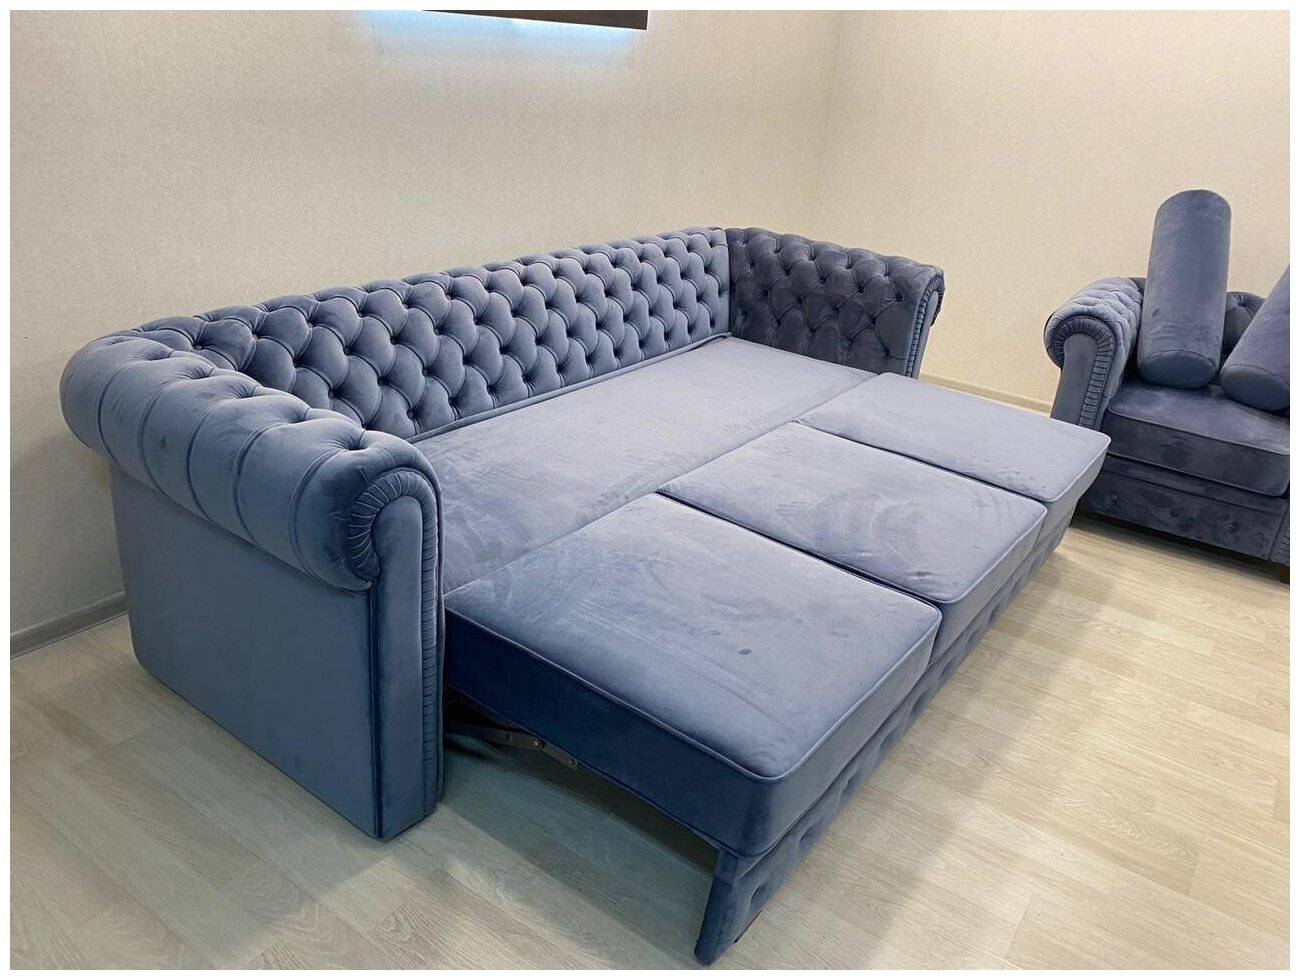 Комплект мягкой мебели диван раскладной Честер 250см + кресло Честер 110см+2 валика